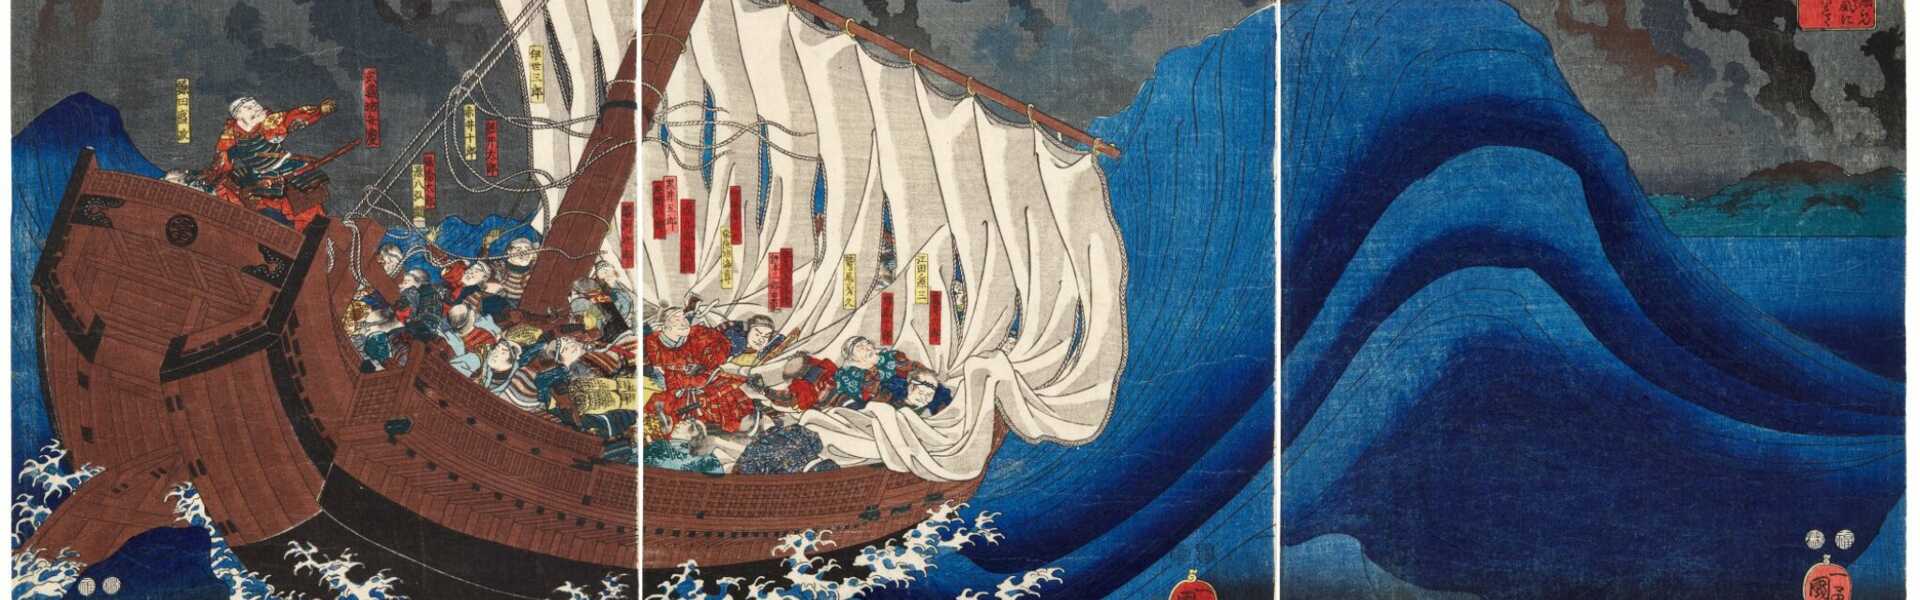 Utagawa Kuniyoshi (1797-1861) | The Ghosts of the Taira Attack Yoshitsune in Daimotsu Bay | Edo period, 19th century